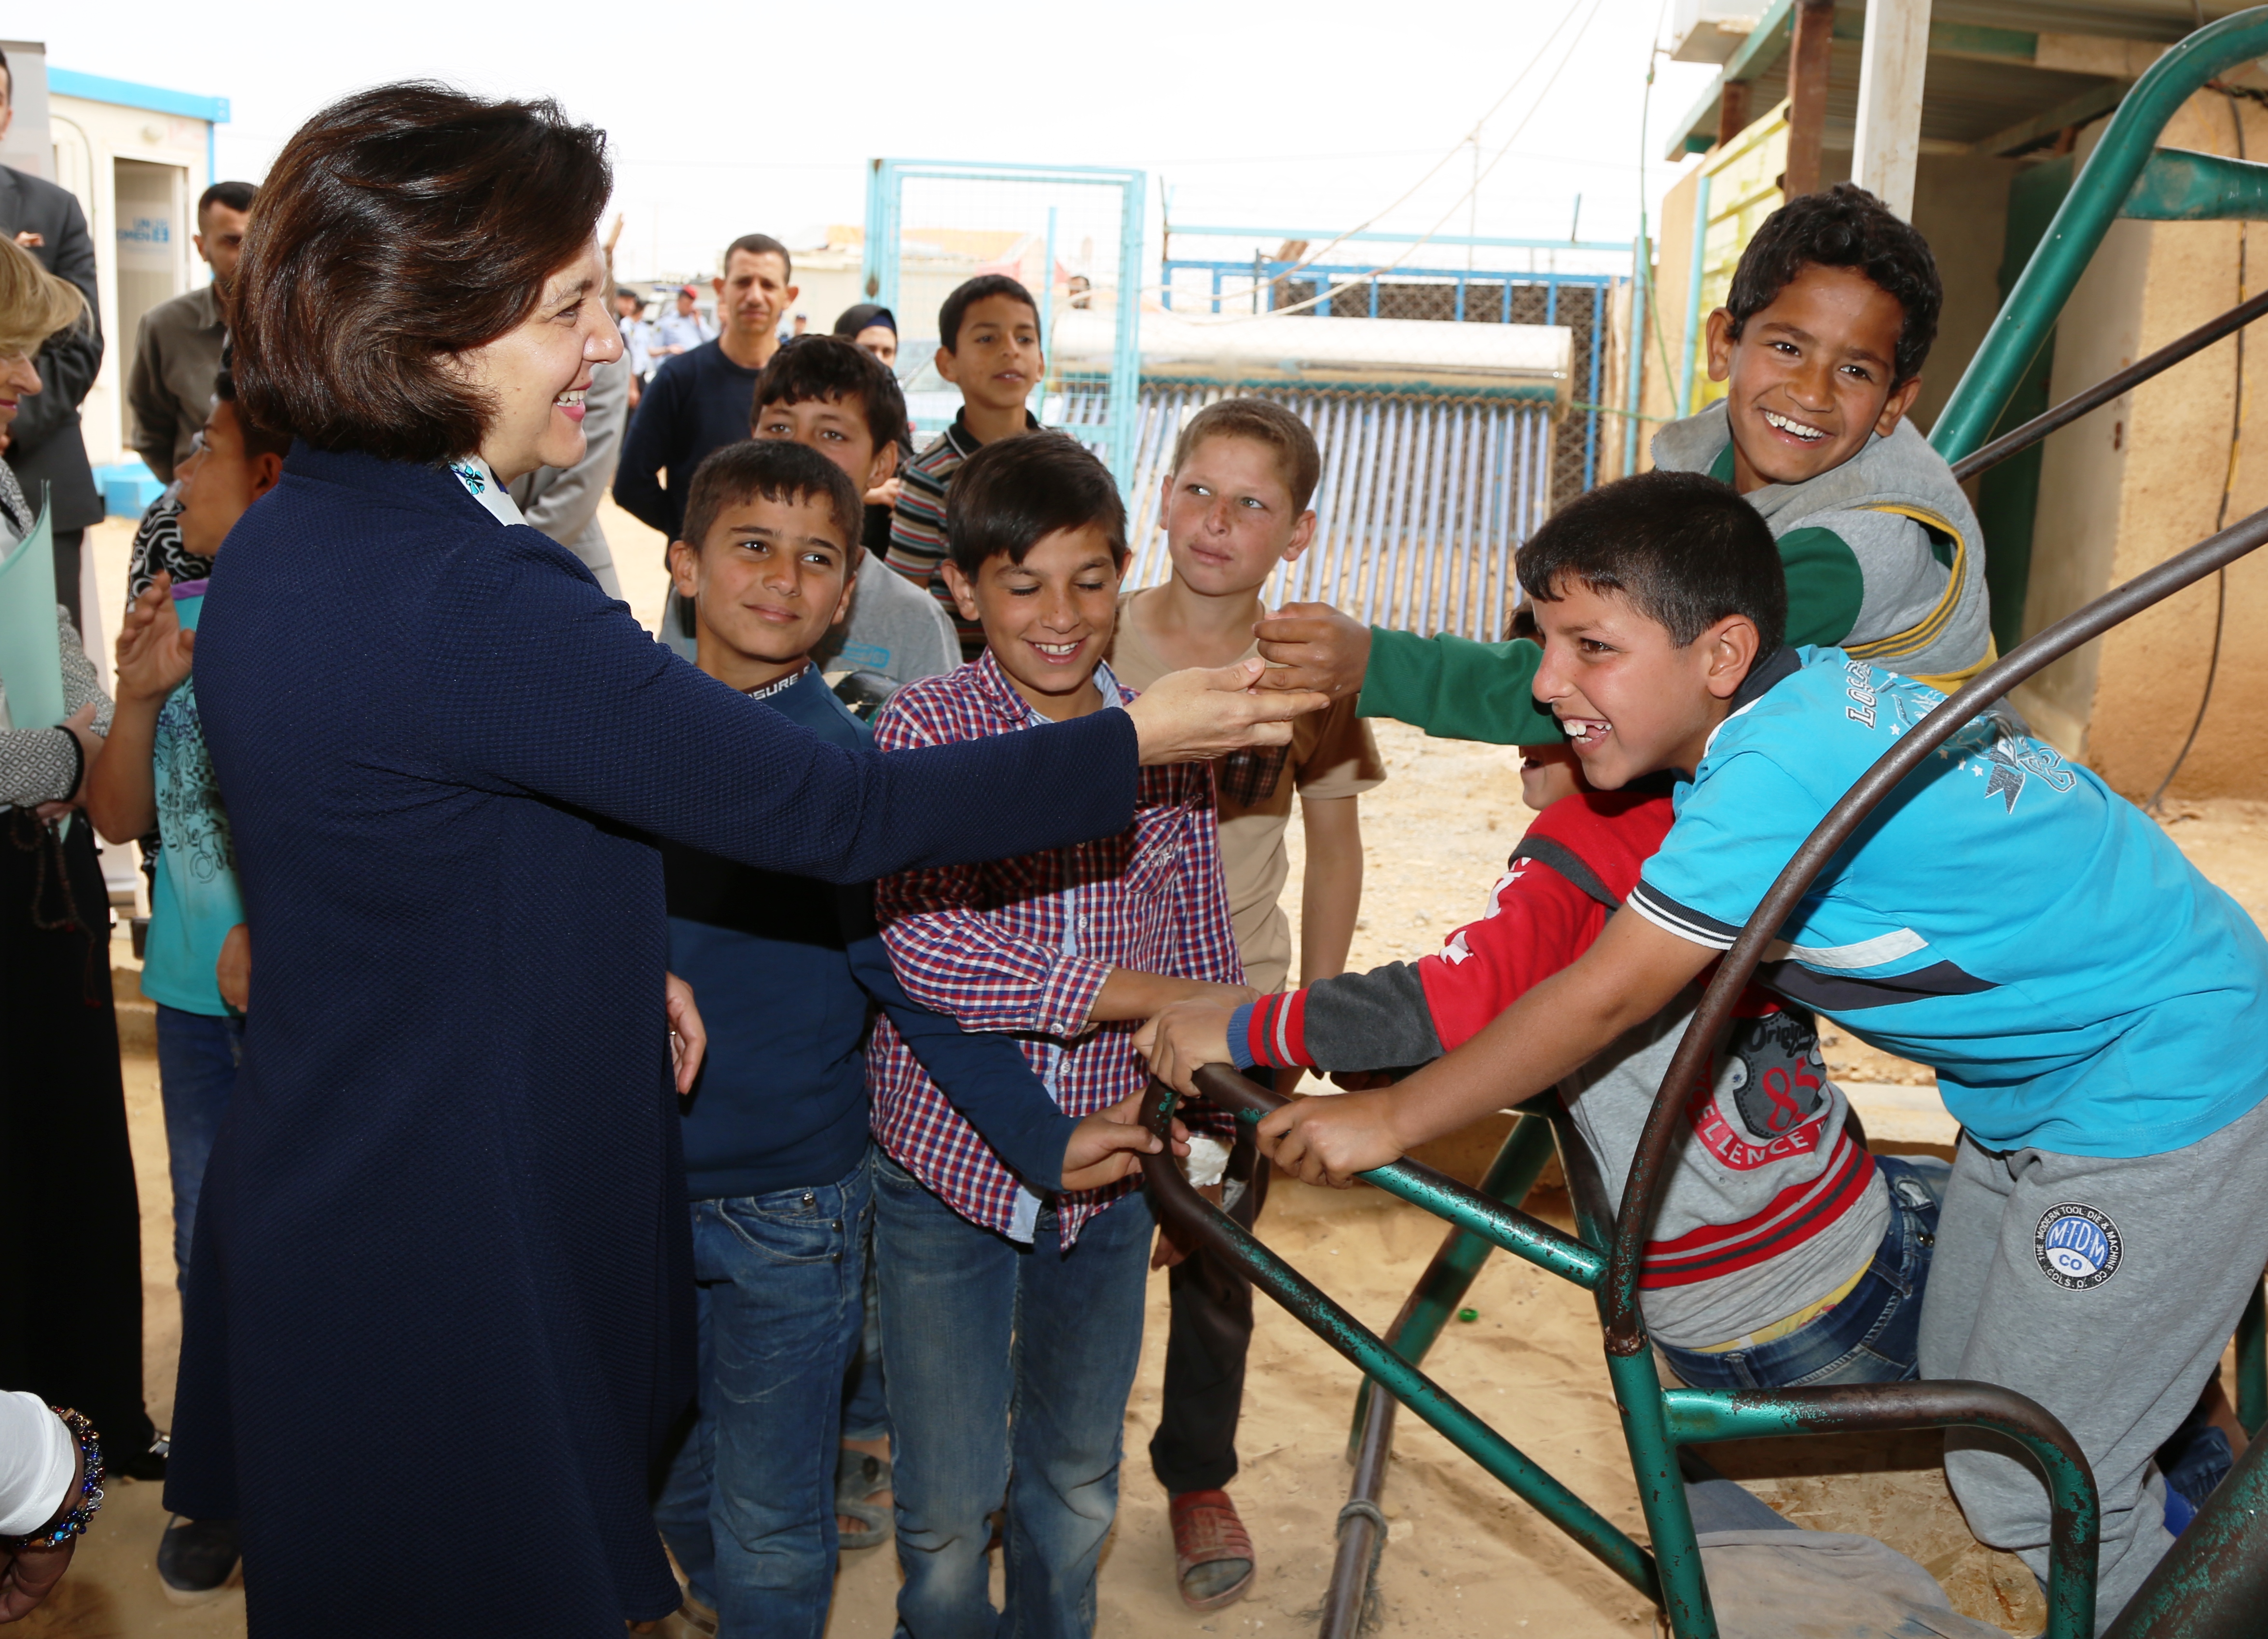 Minister of Social Development, H.E. Ms. Hala Lattouf greets children within the Oasis in Za'atari